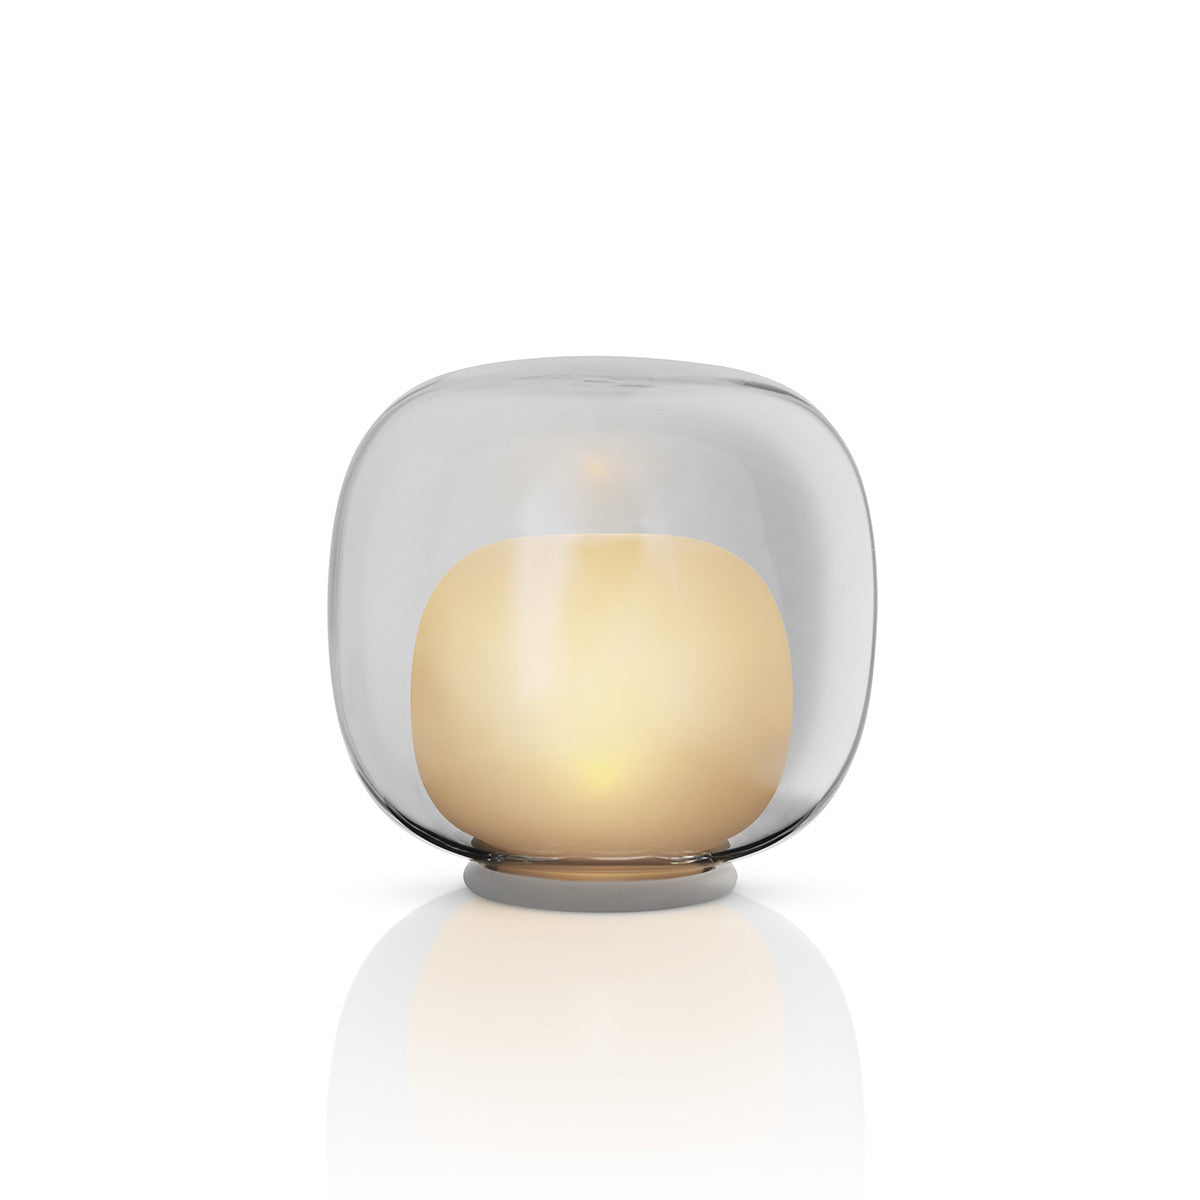 EVA SOLO GLASS LED TEALIGHT LAMP